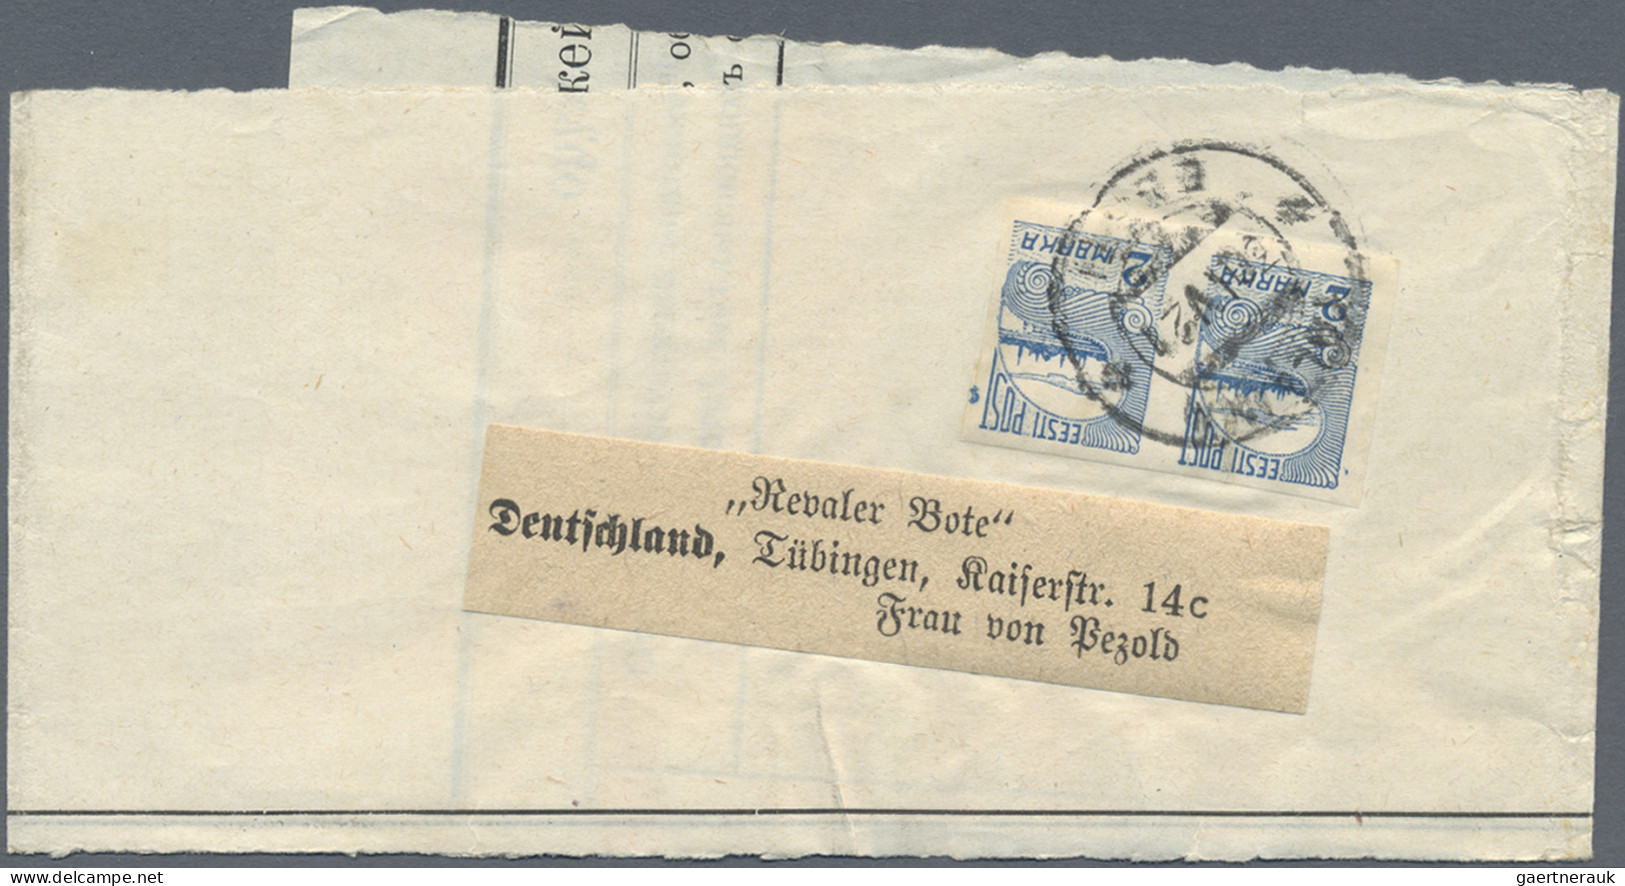 Nachlässe: 1883/2013, EUROPA, Posten mit ca. 60 Briefen, Karten und Ganzsachen m